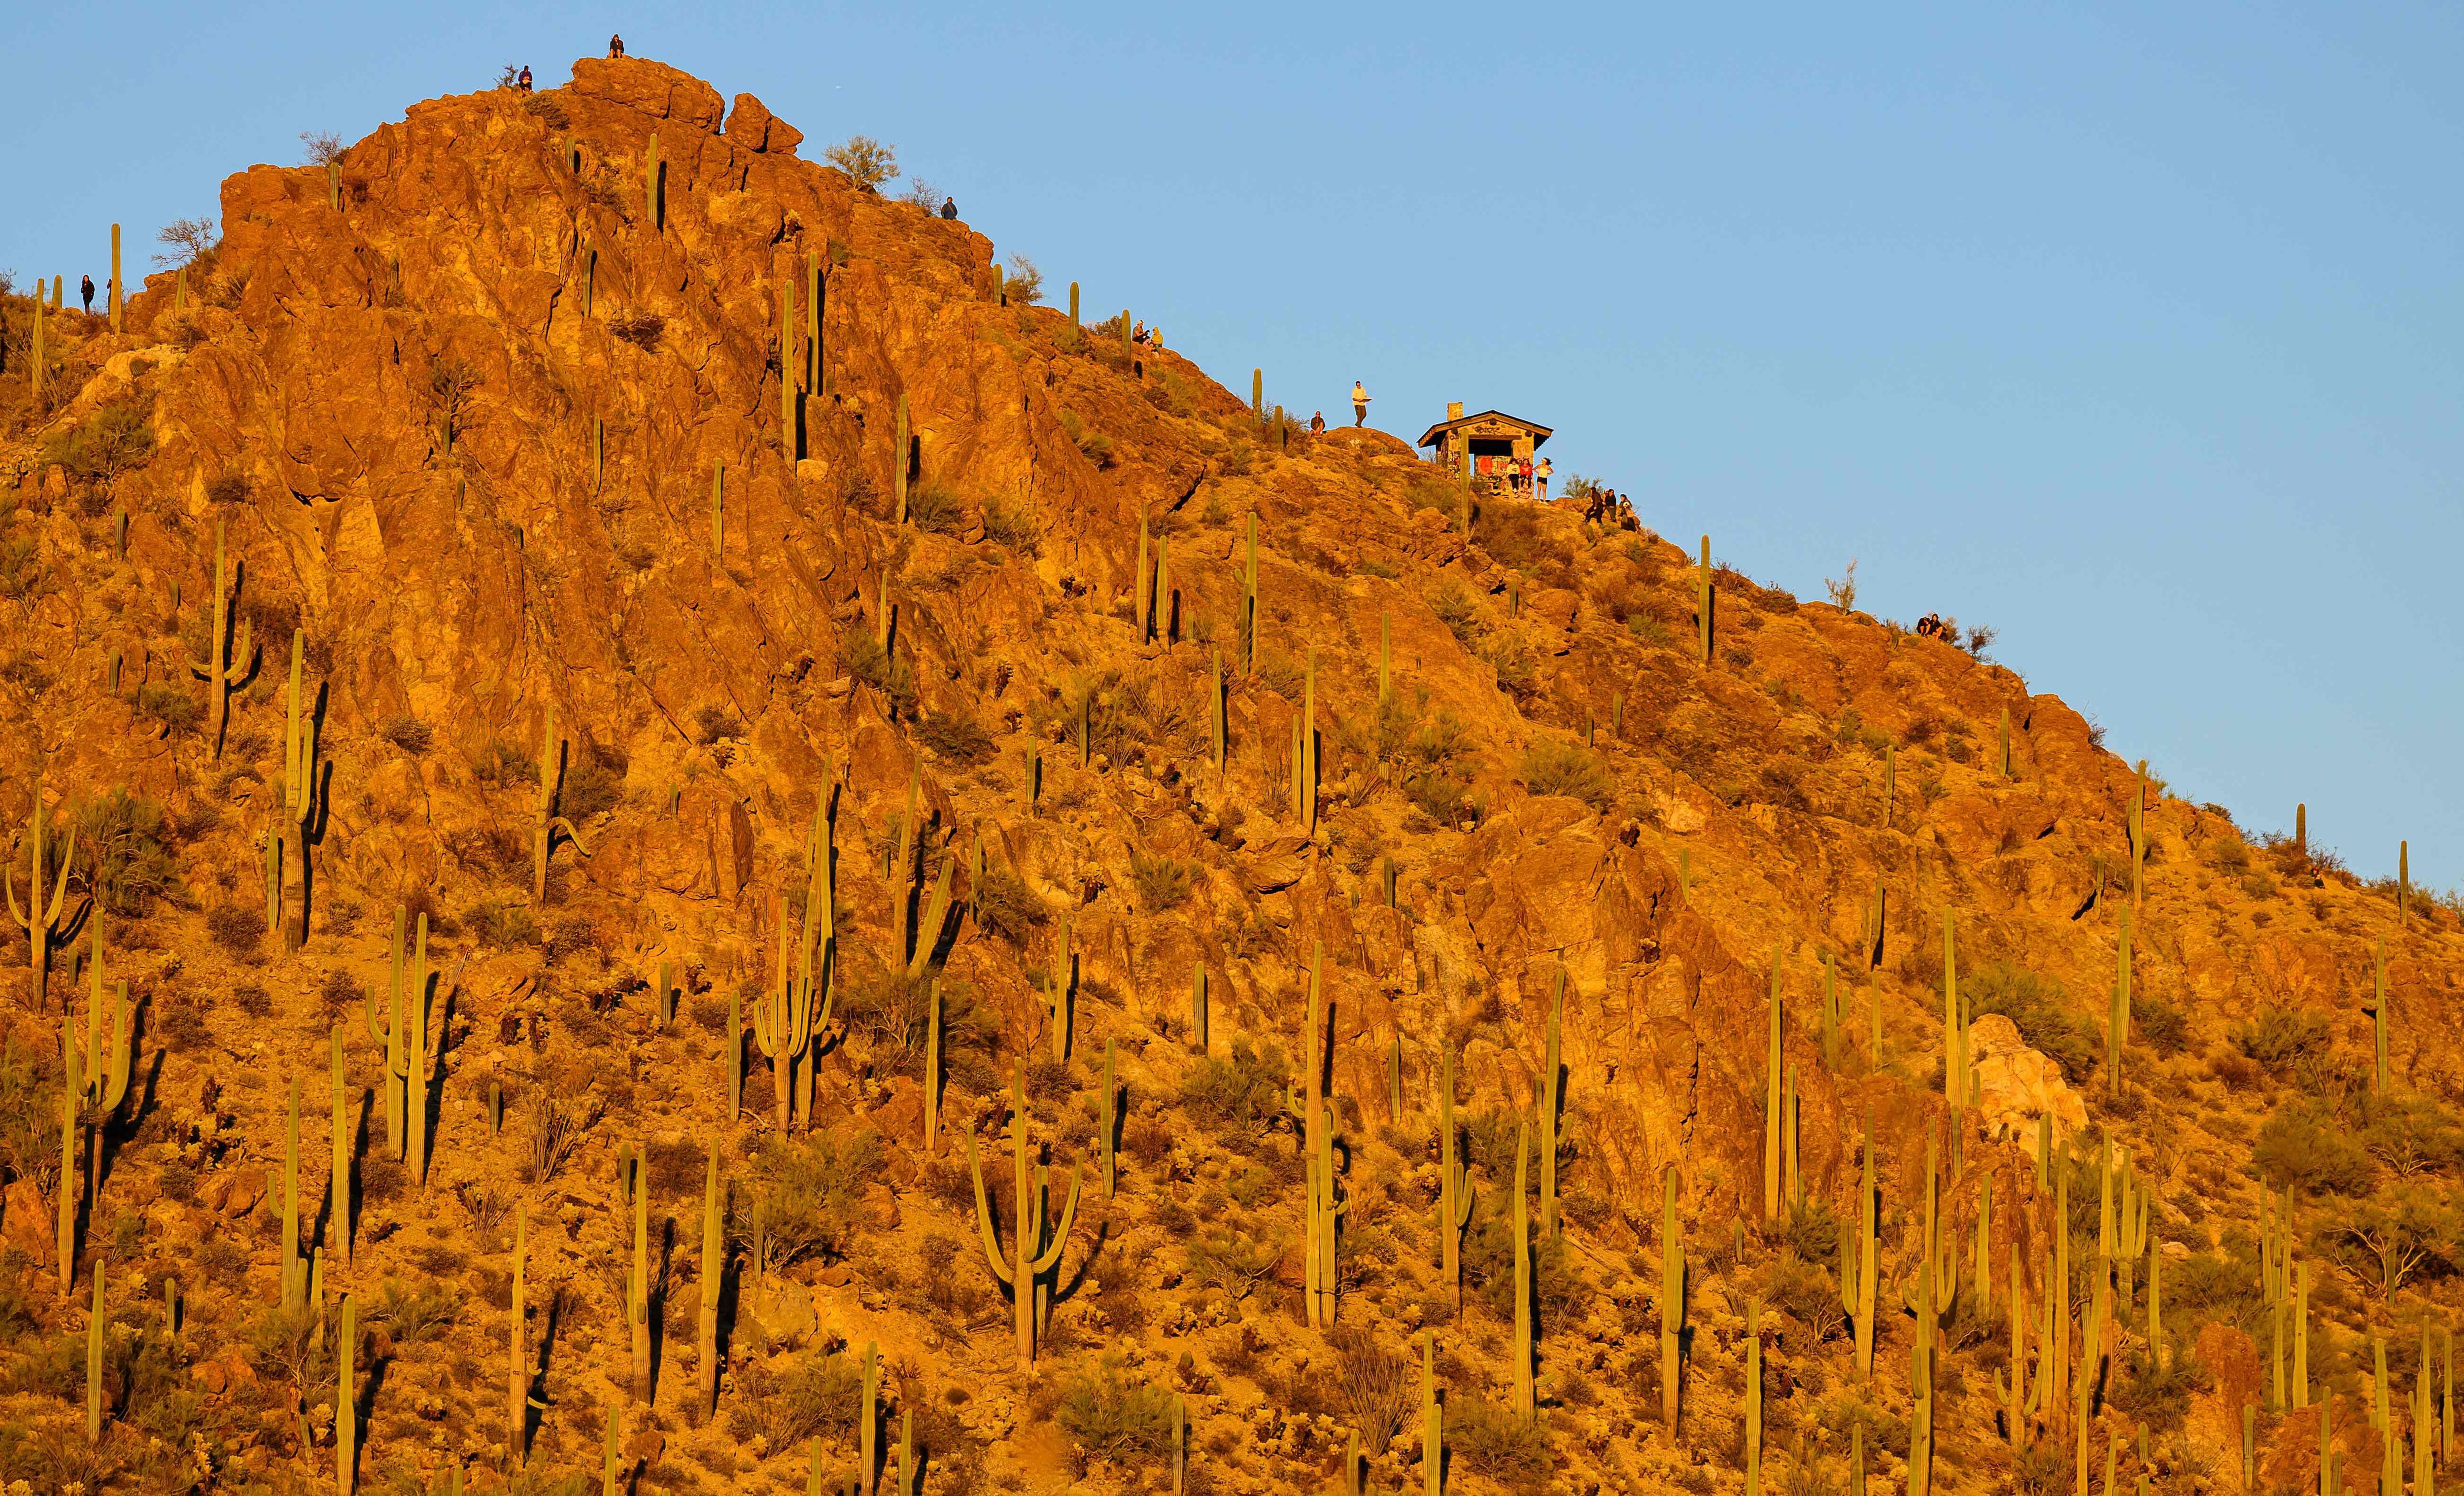 La gente observa la puesta de sol desde Gates Pass, cerca de la entrada al Parque Nacional Saguaro en Tucson, Arizona, el 19 de noviembre de 2023. (Foto de JOSH EDELSON / AFP)